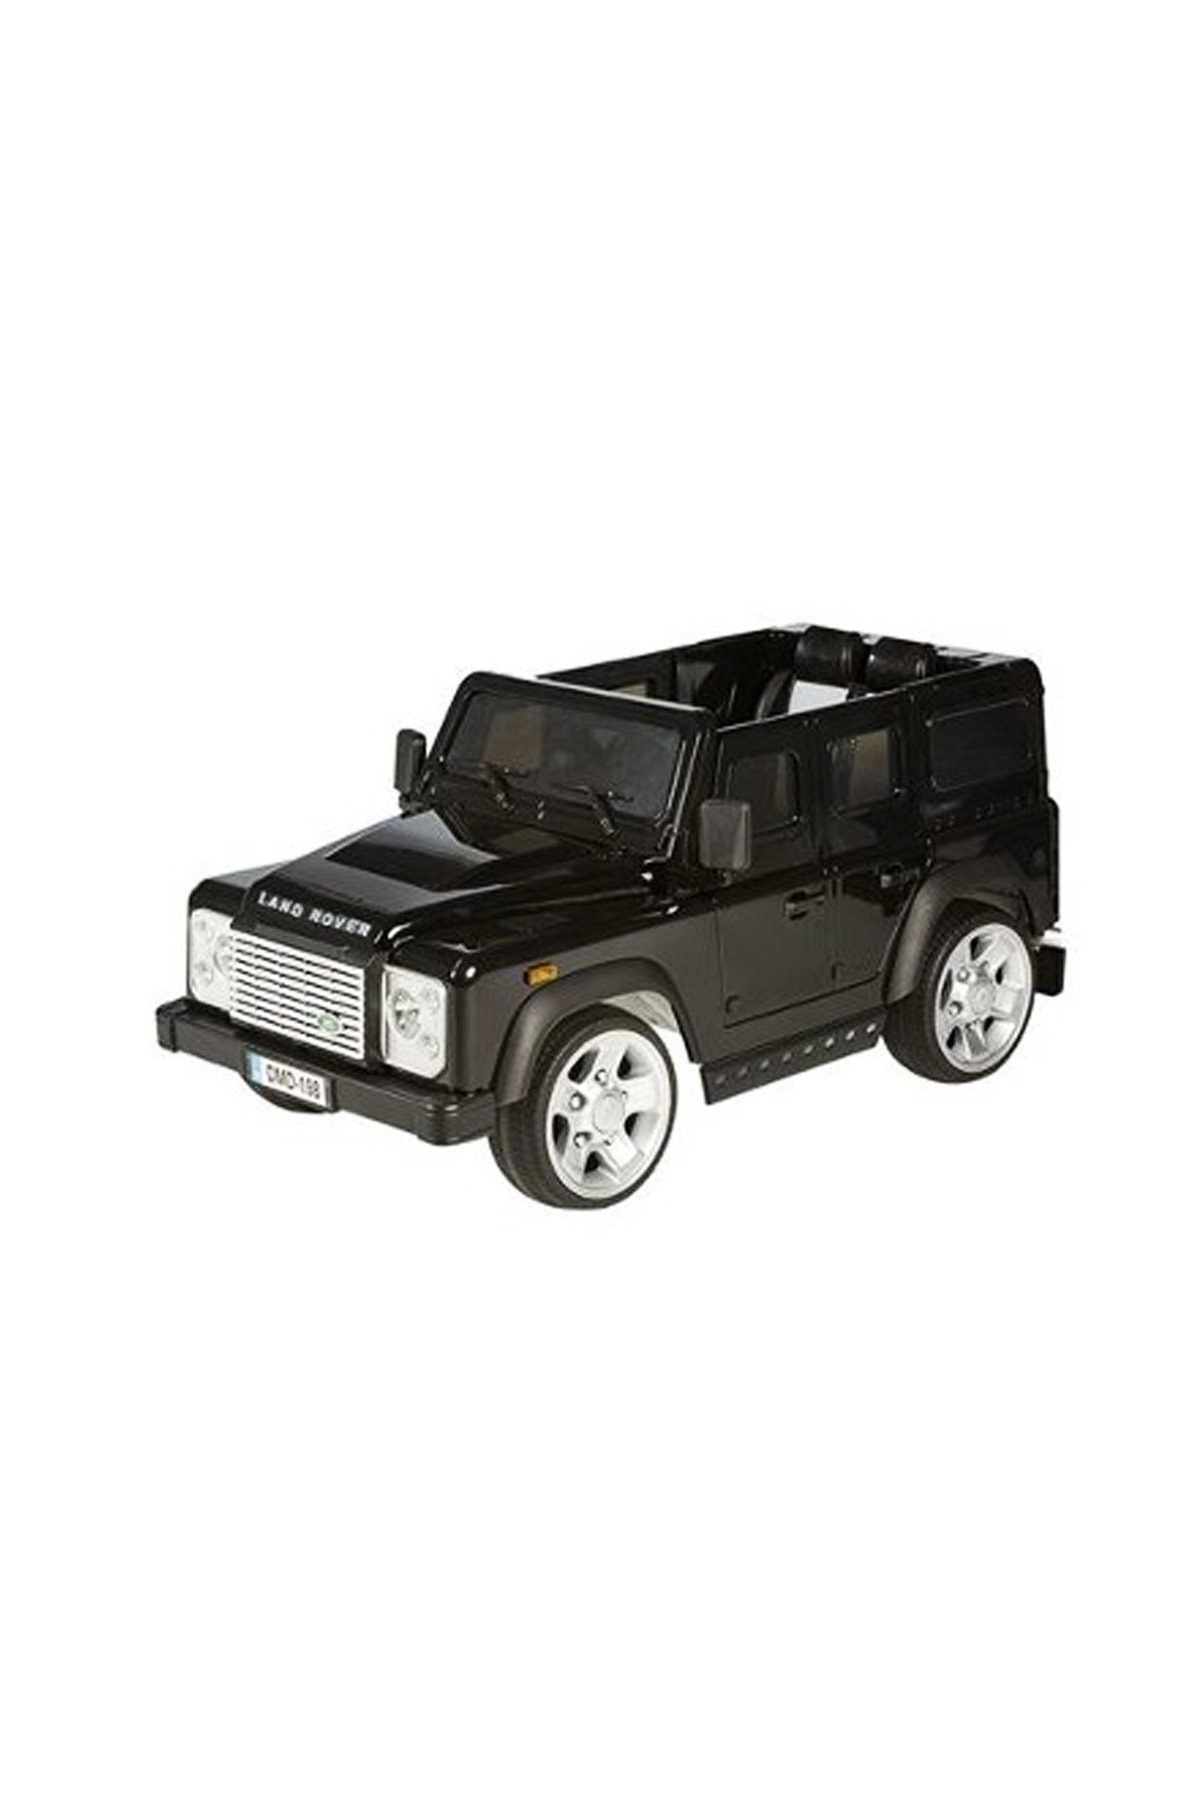 Baby2Go/Nil Deniz 65335 Land Rover Siyah Akülü Jeep 12 Volt